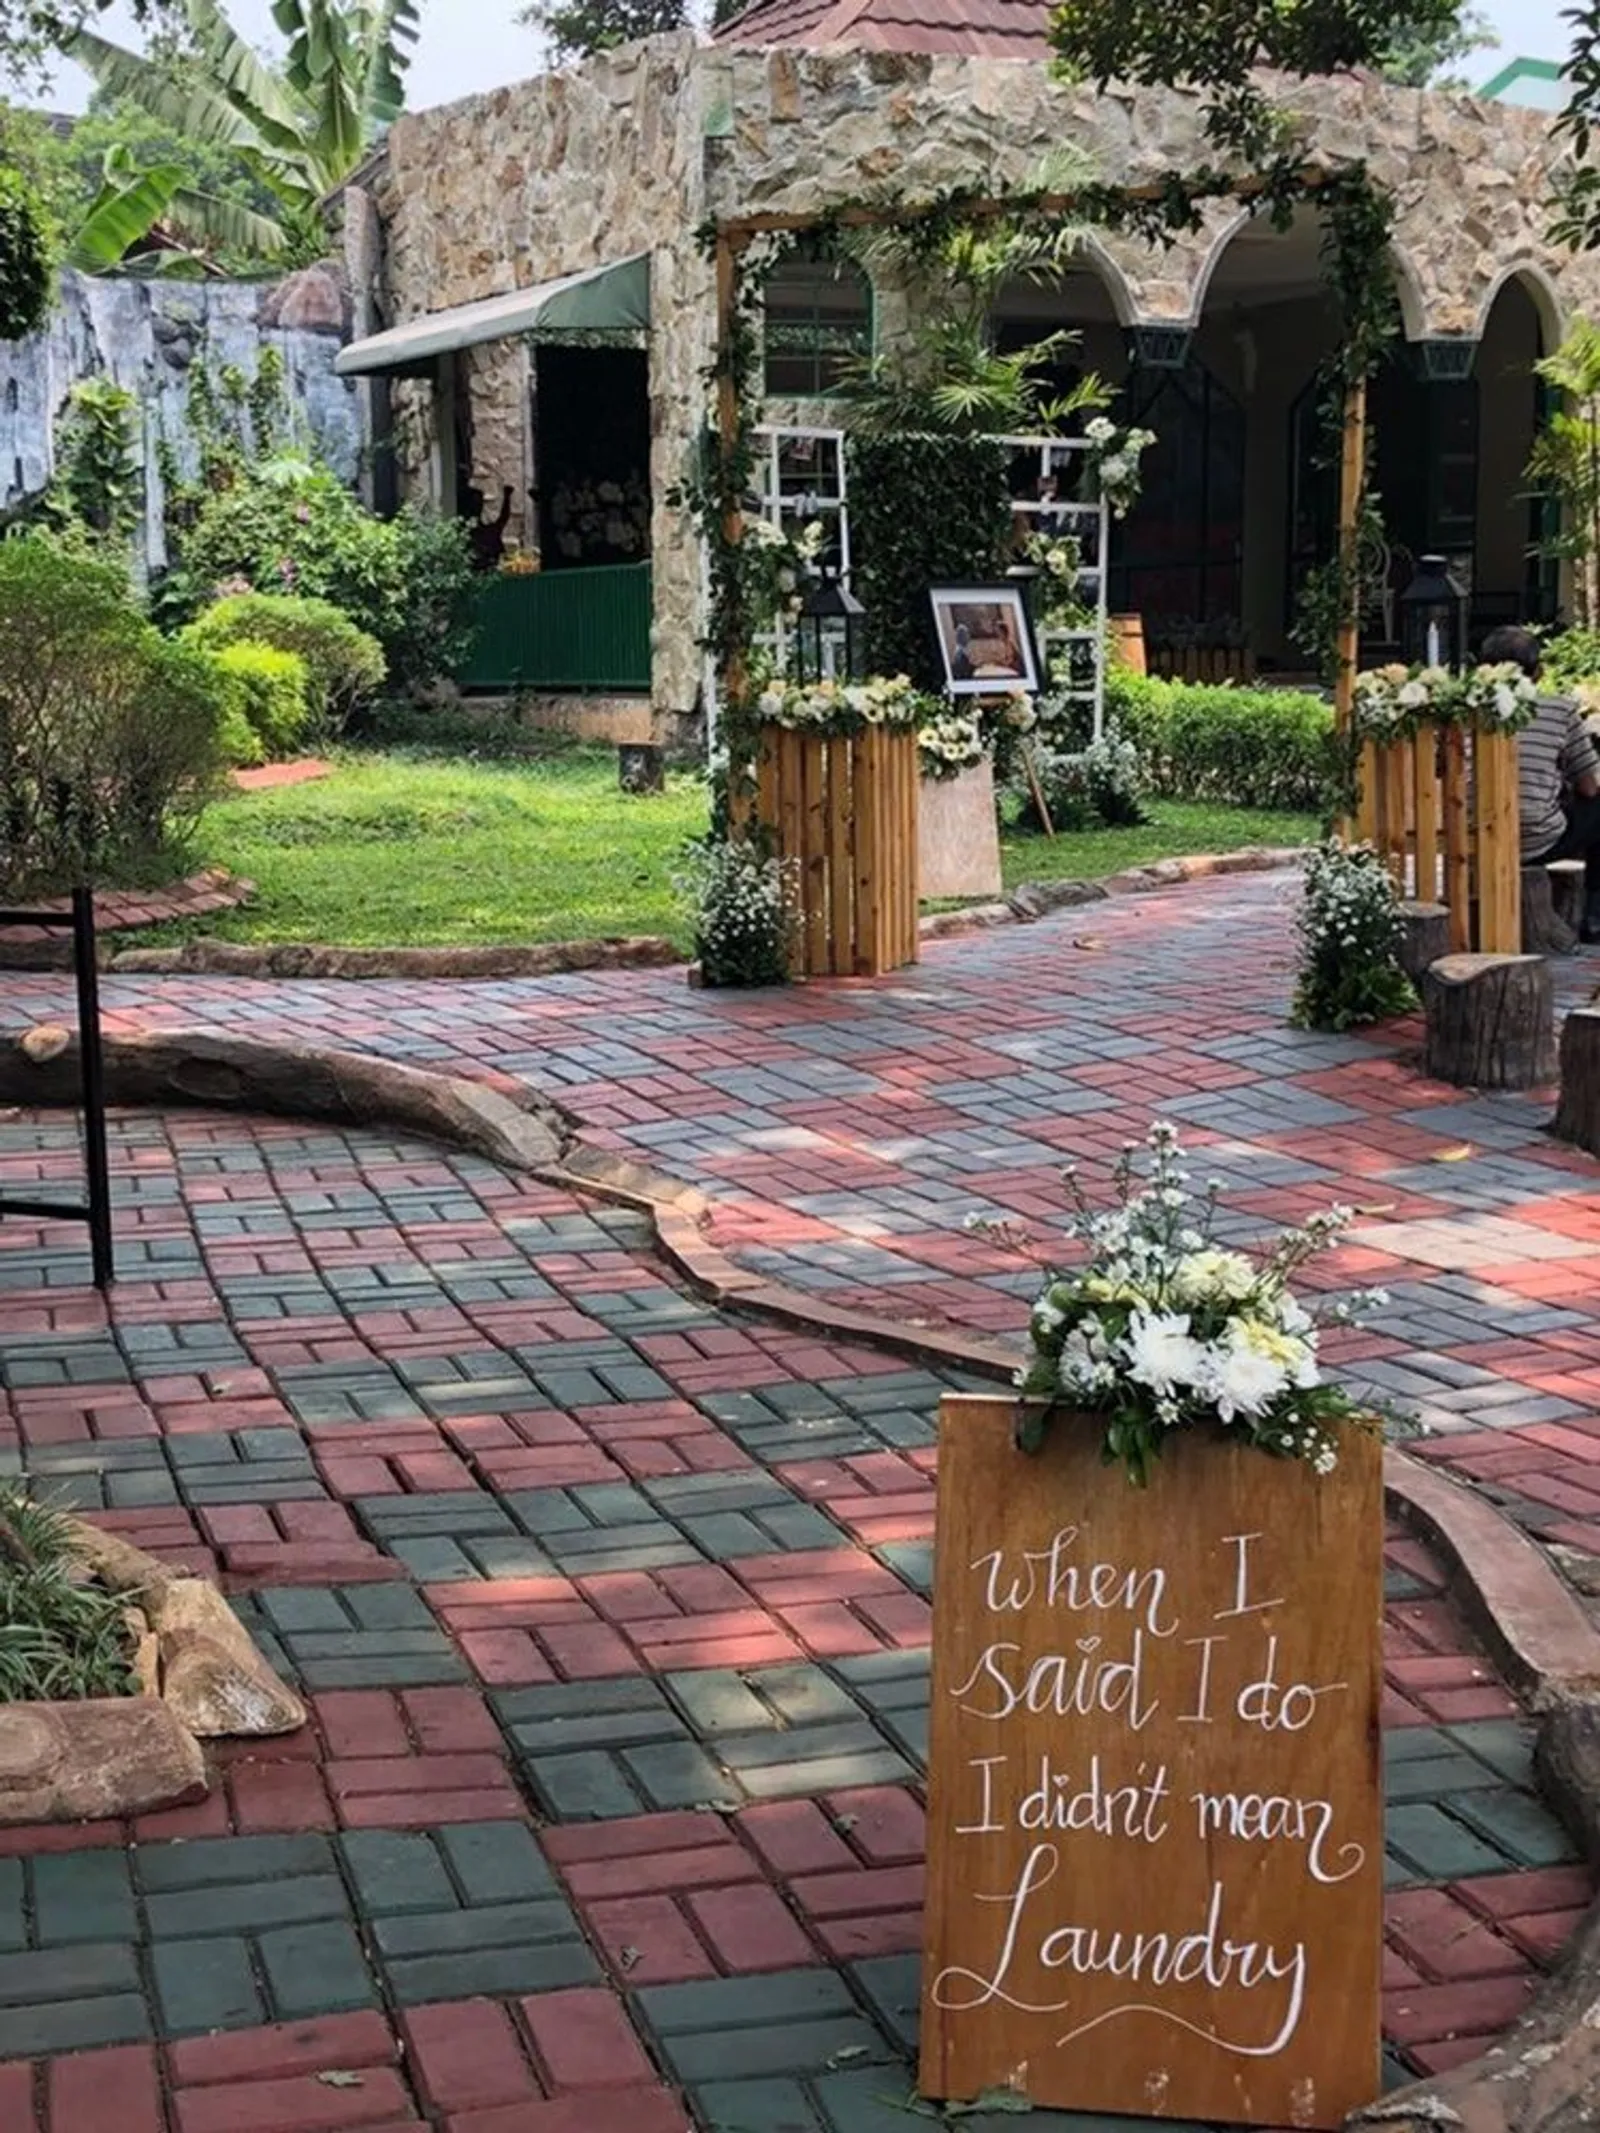 7 Harga Sewa Gedung Pernikahan di Bekasi Tahun 2019